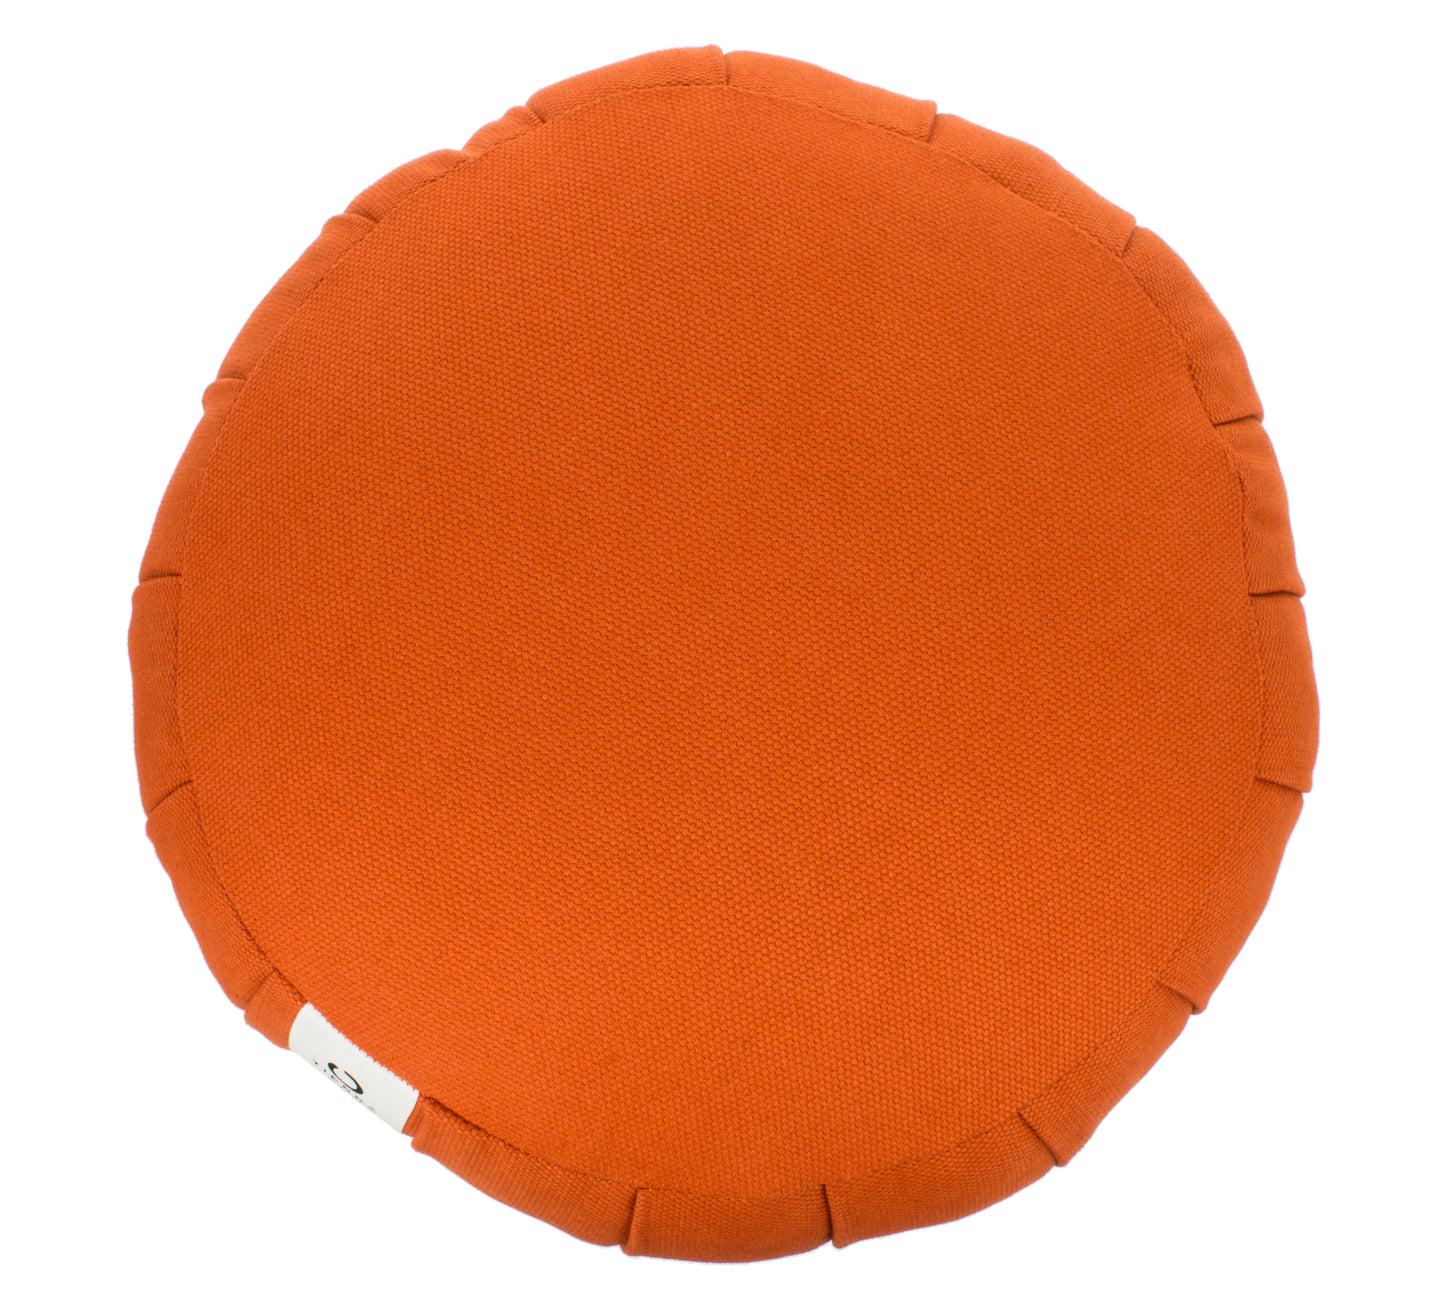 Kapok Round Zafu - Orange, Large